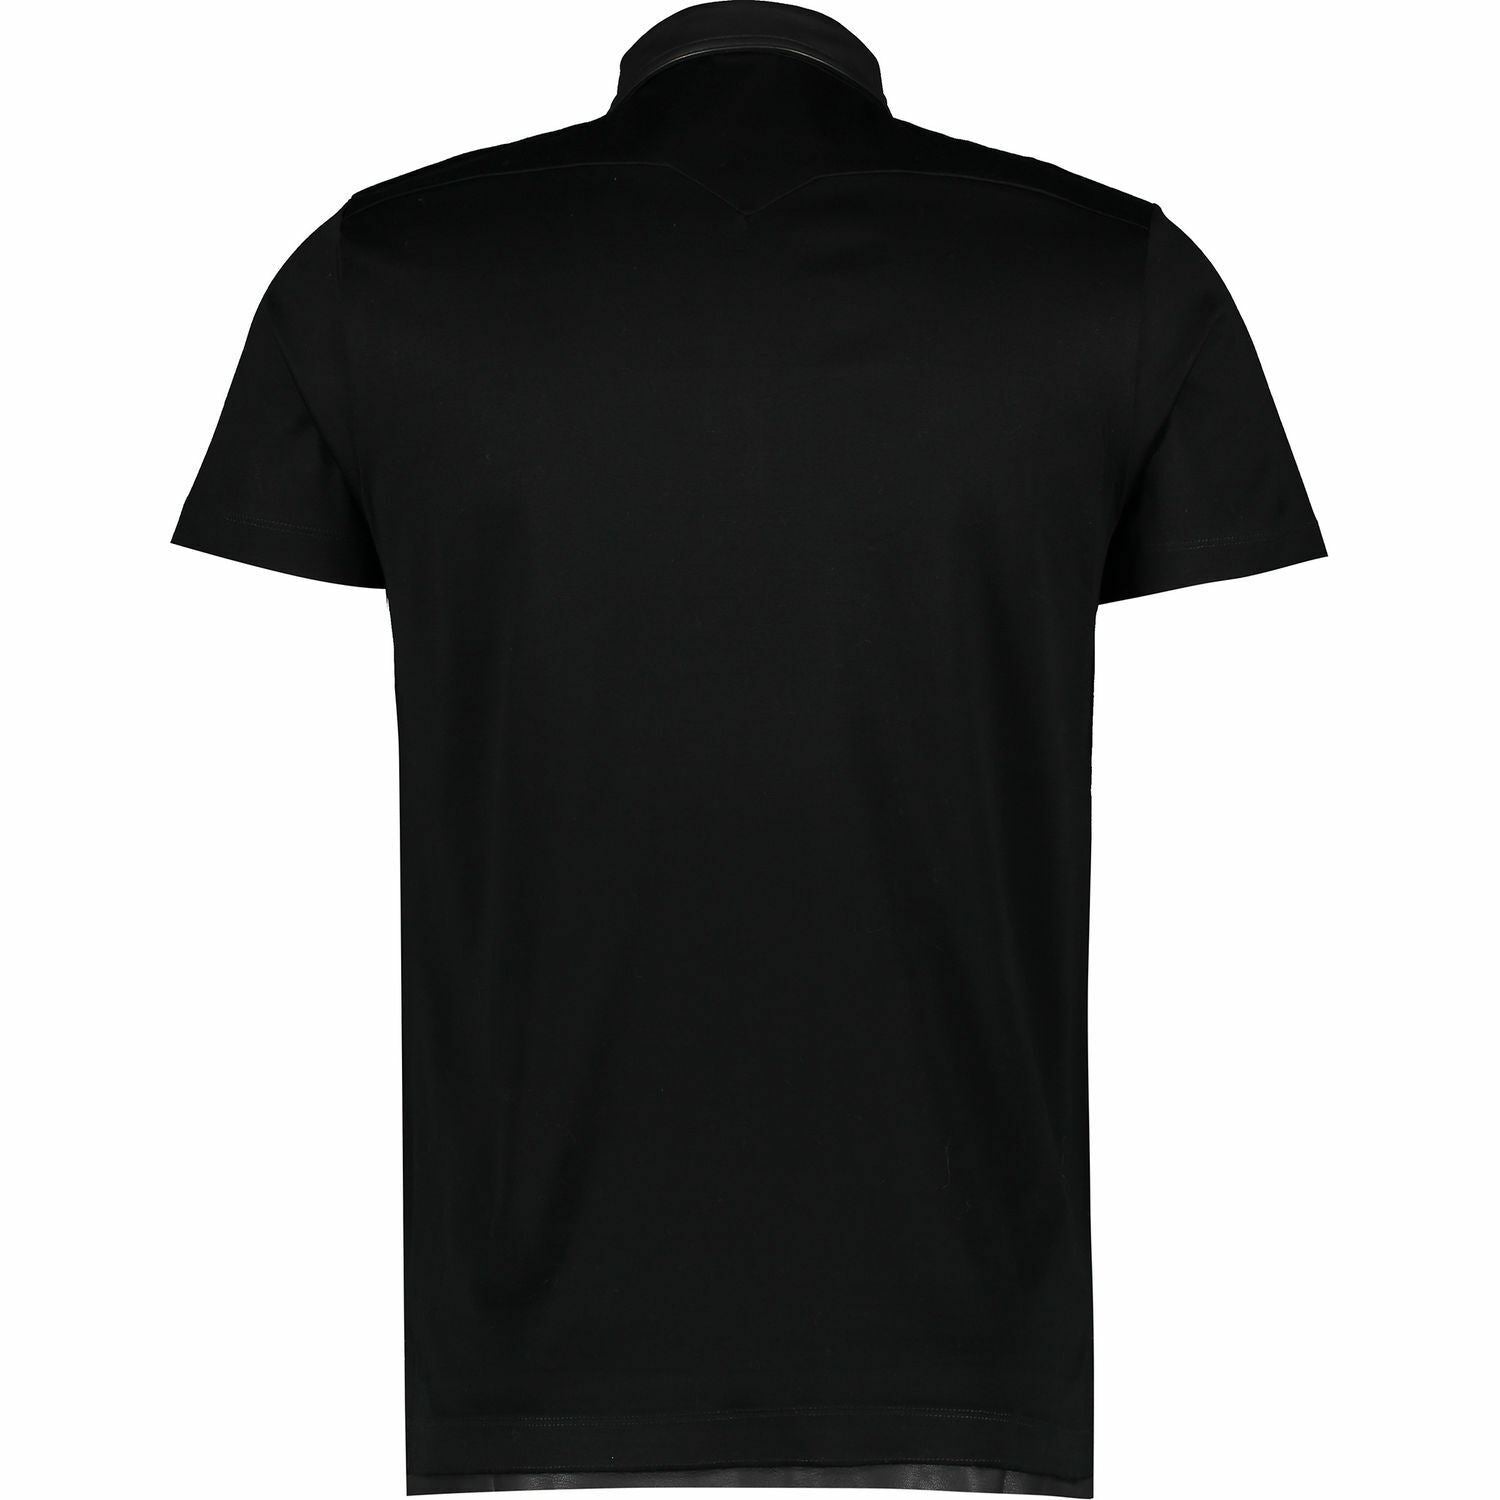 DIESEL Men's Black Leather Trim Polo Shirt, size S Size M Size L